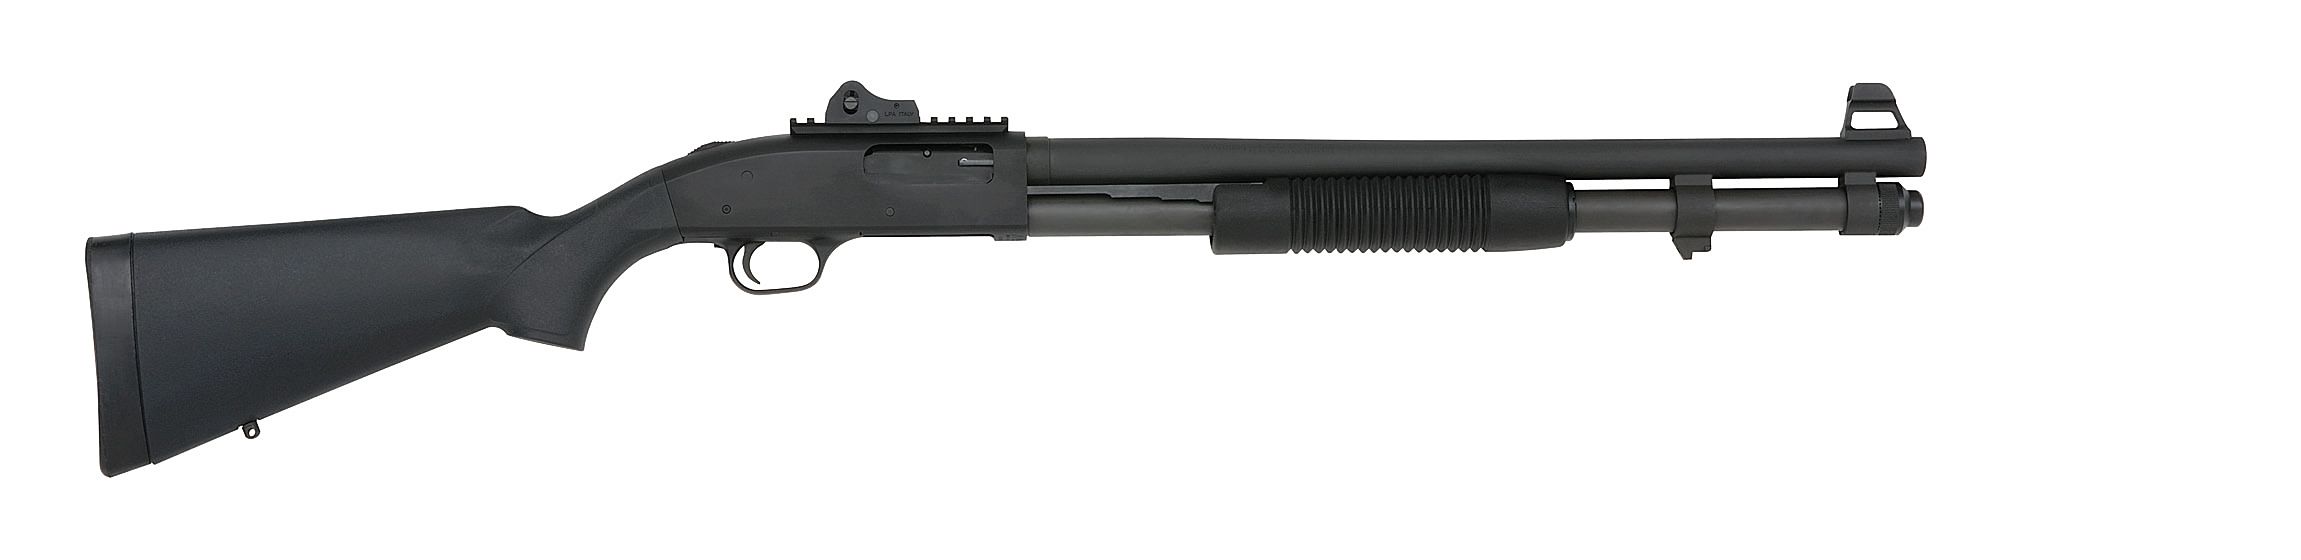 Mossberg 590A1 Tactical Shotguns